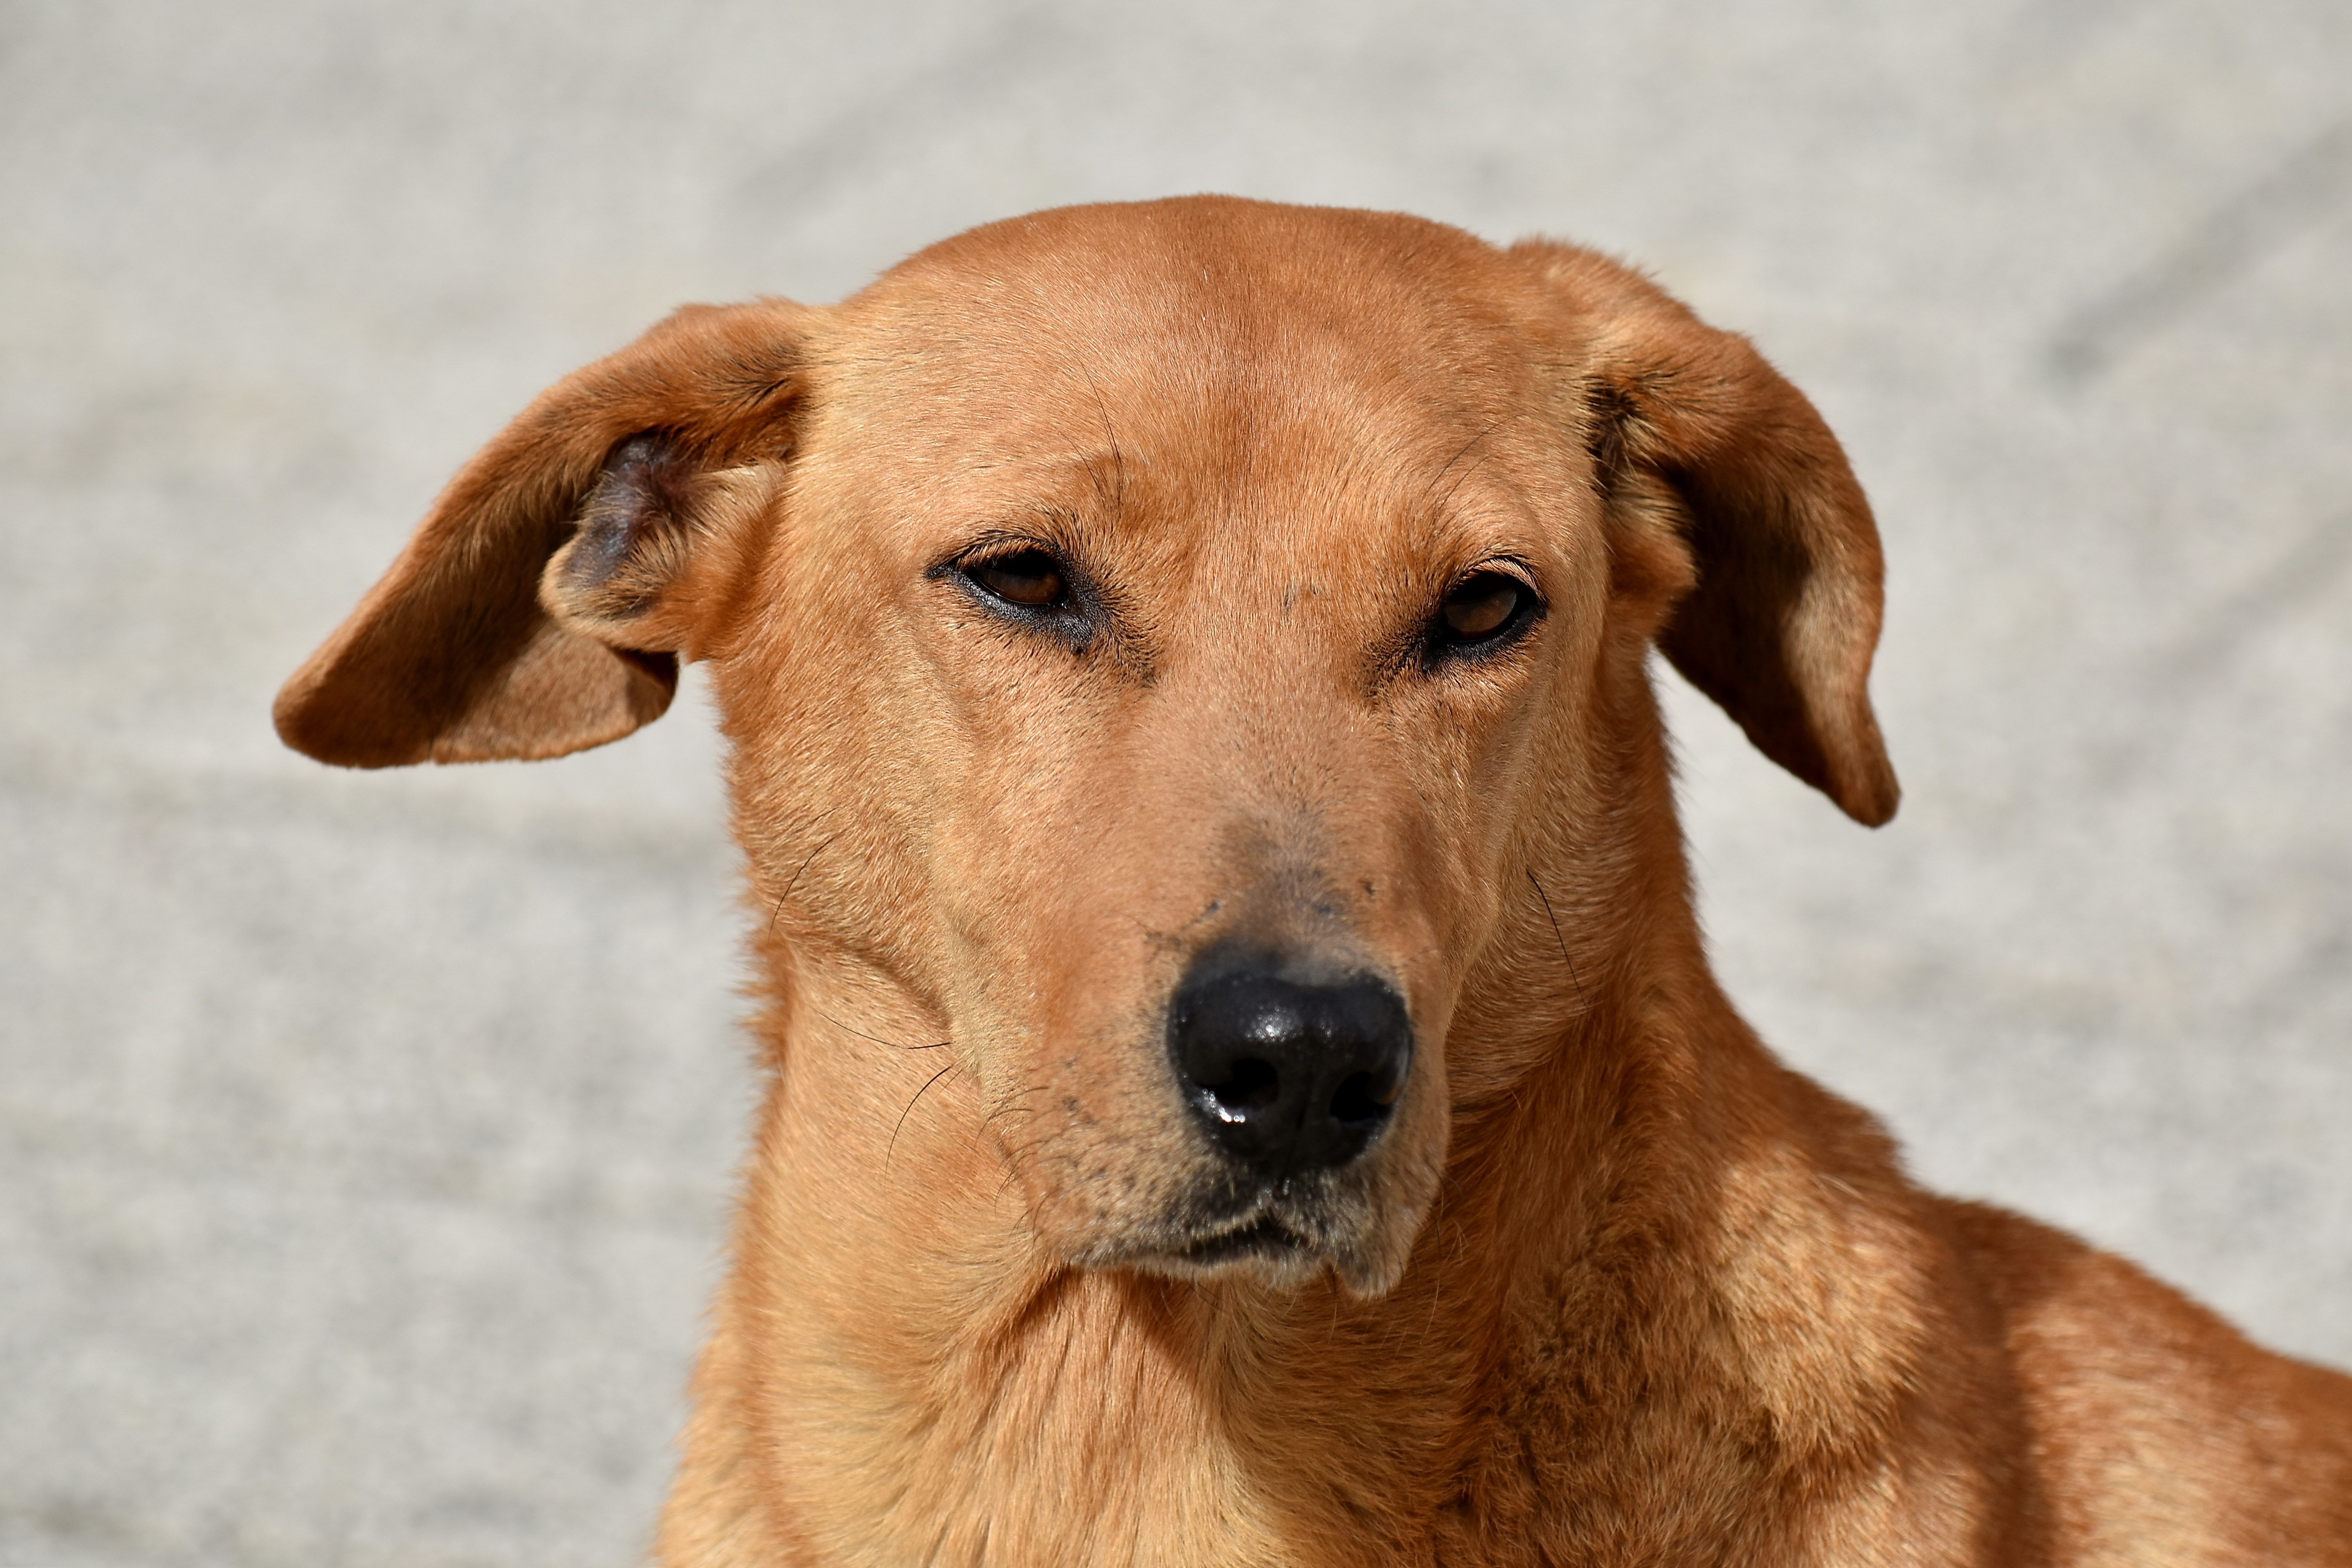 Бесплатное изображение: красивые, собака, ухо, глаза, мех, руководитель,  оранжевый желтый, портрет, мило, Охотничья собака